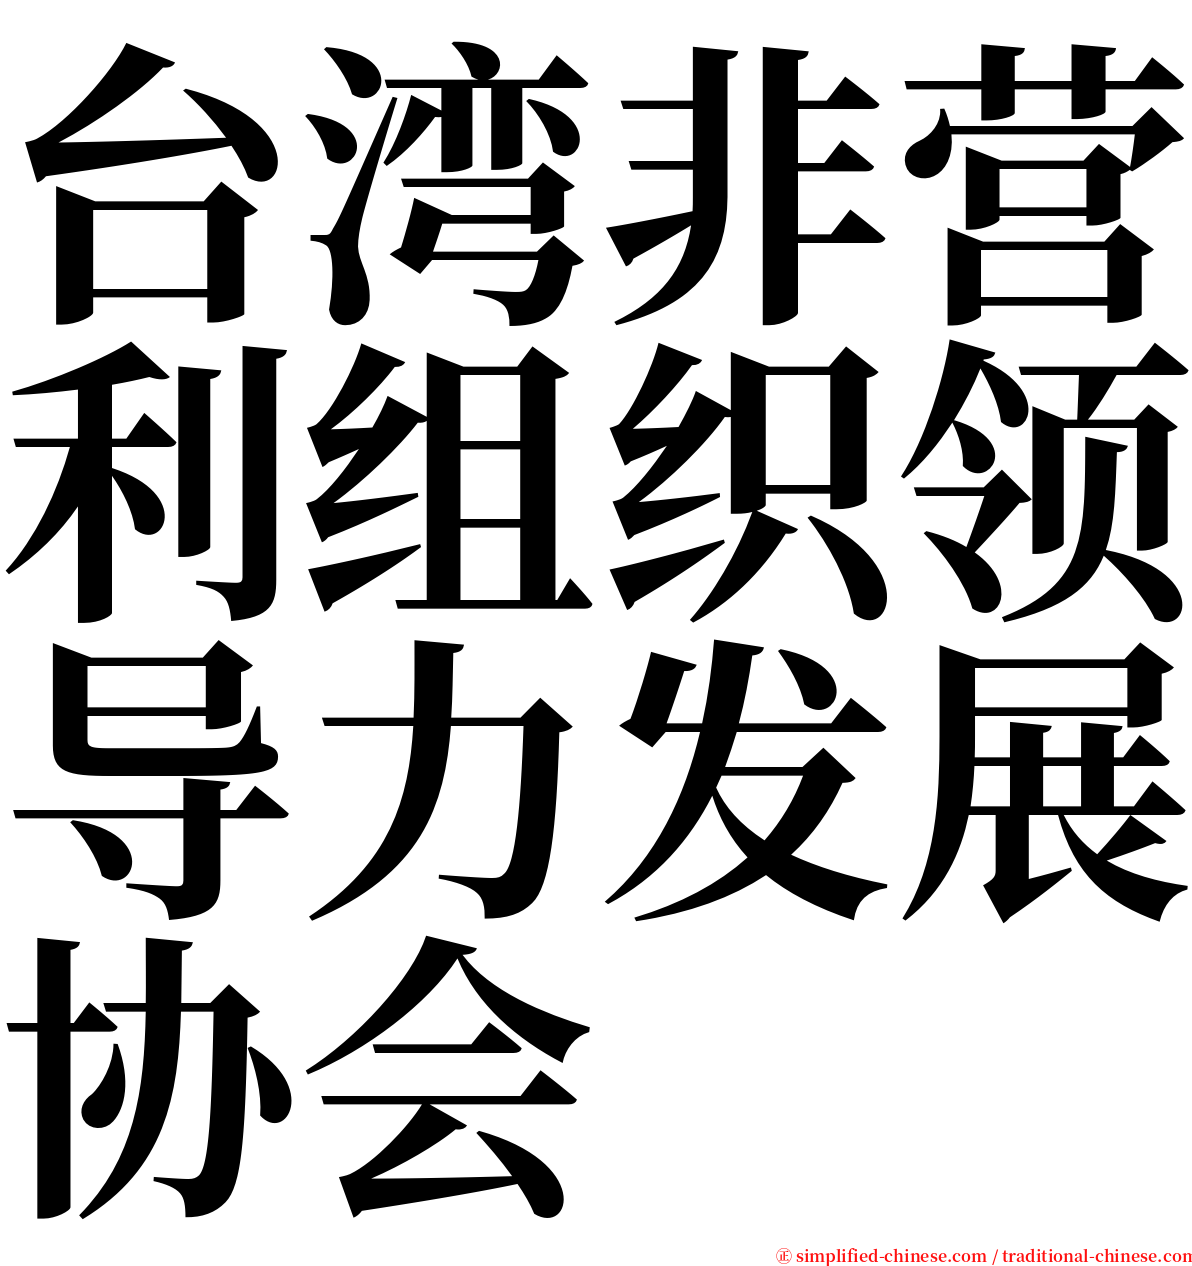 台湾非营利组织领导力发展协会 serif font